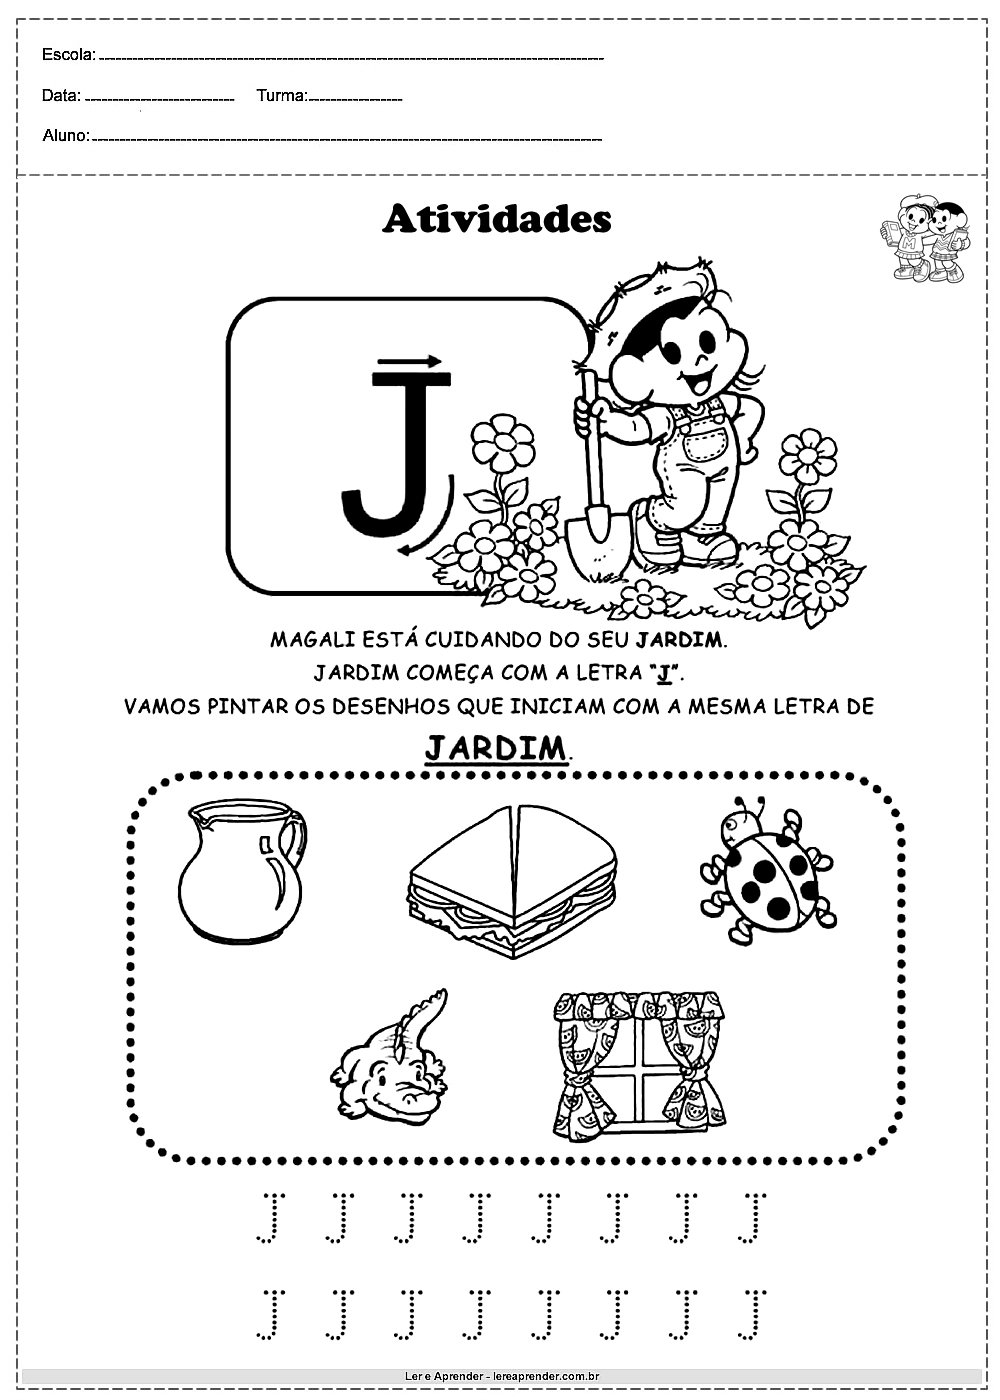 Atividades com alfabeto turma da monica letra J